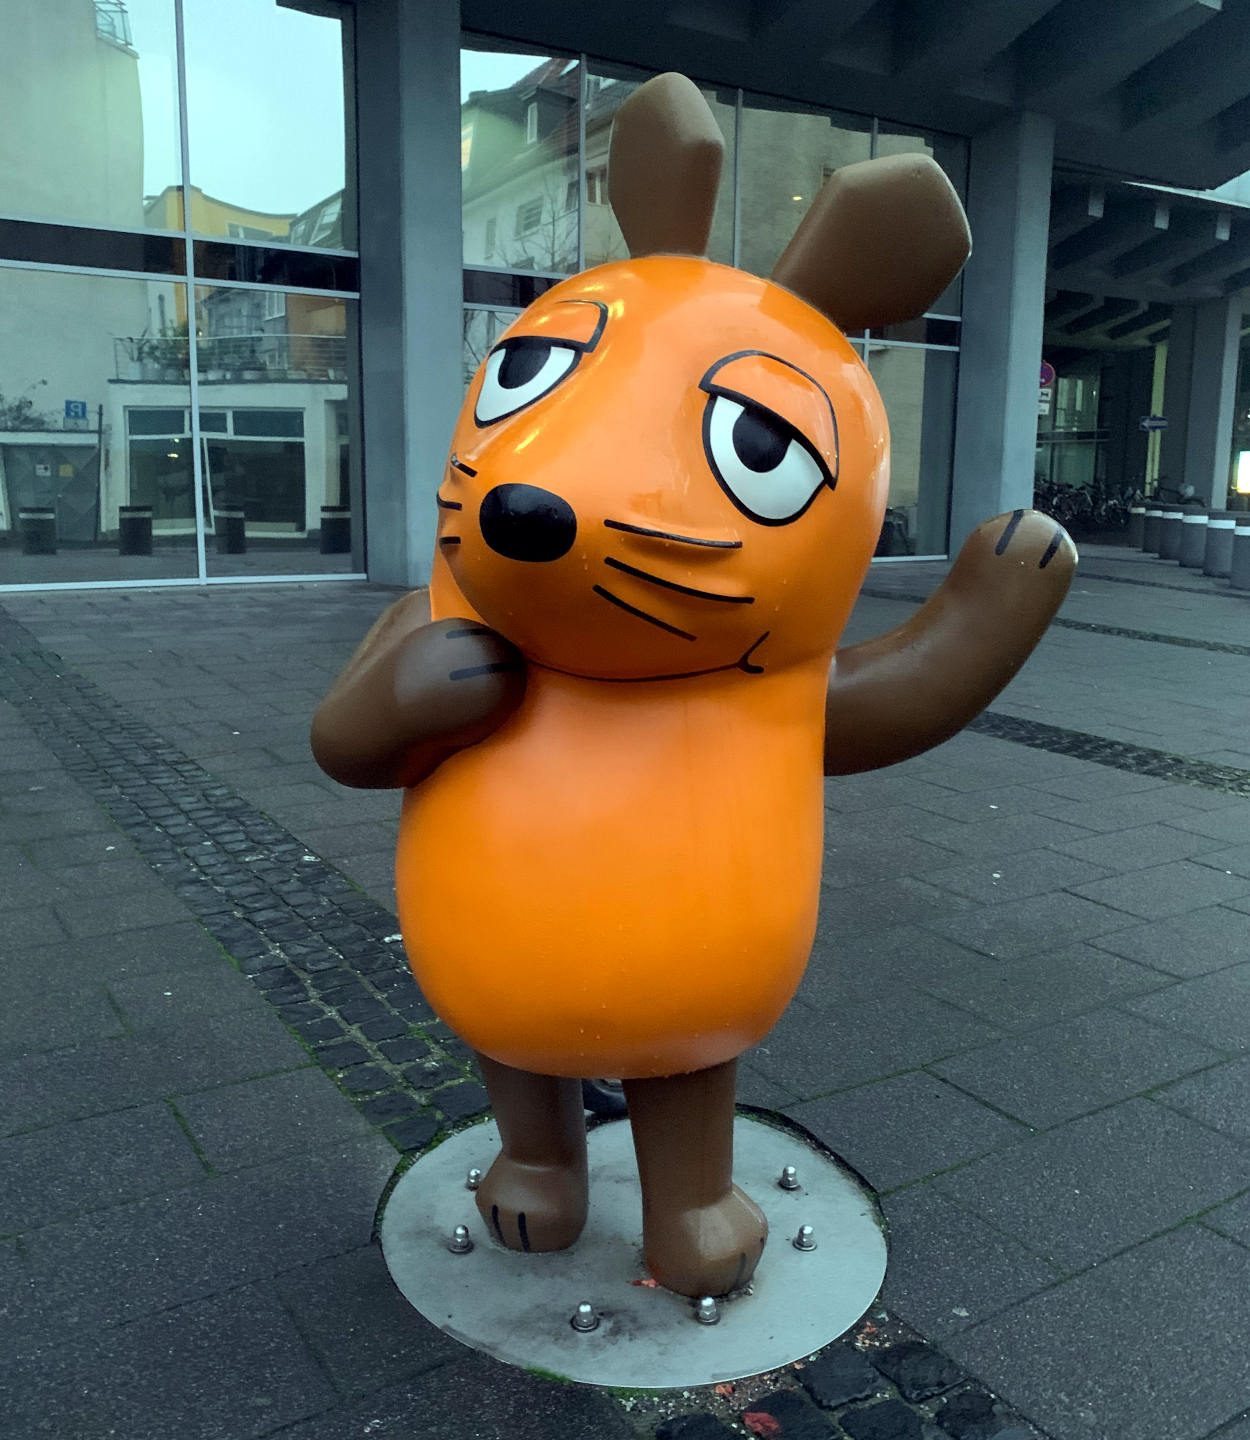 Die orangene Maus in der Kölner Innenstadt, dahinter ein Bürogebäude